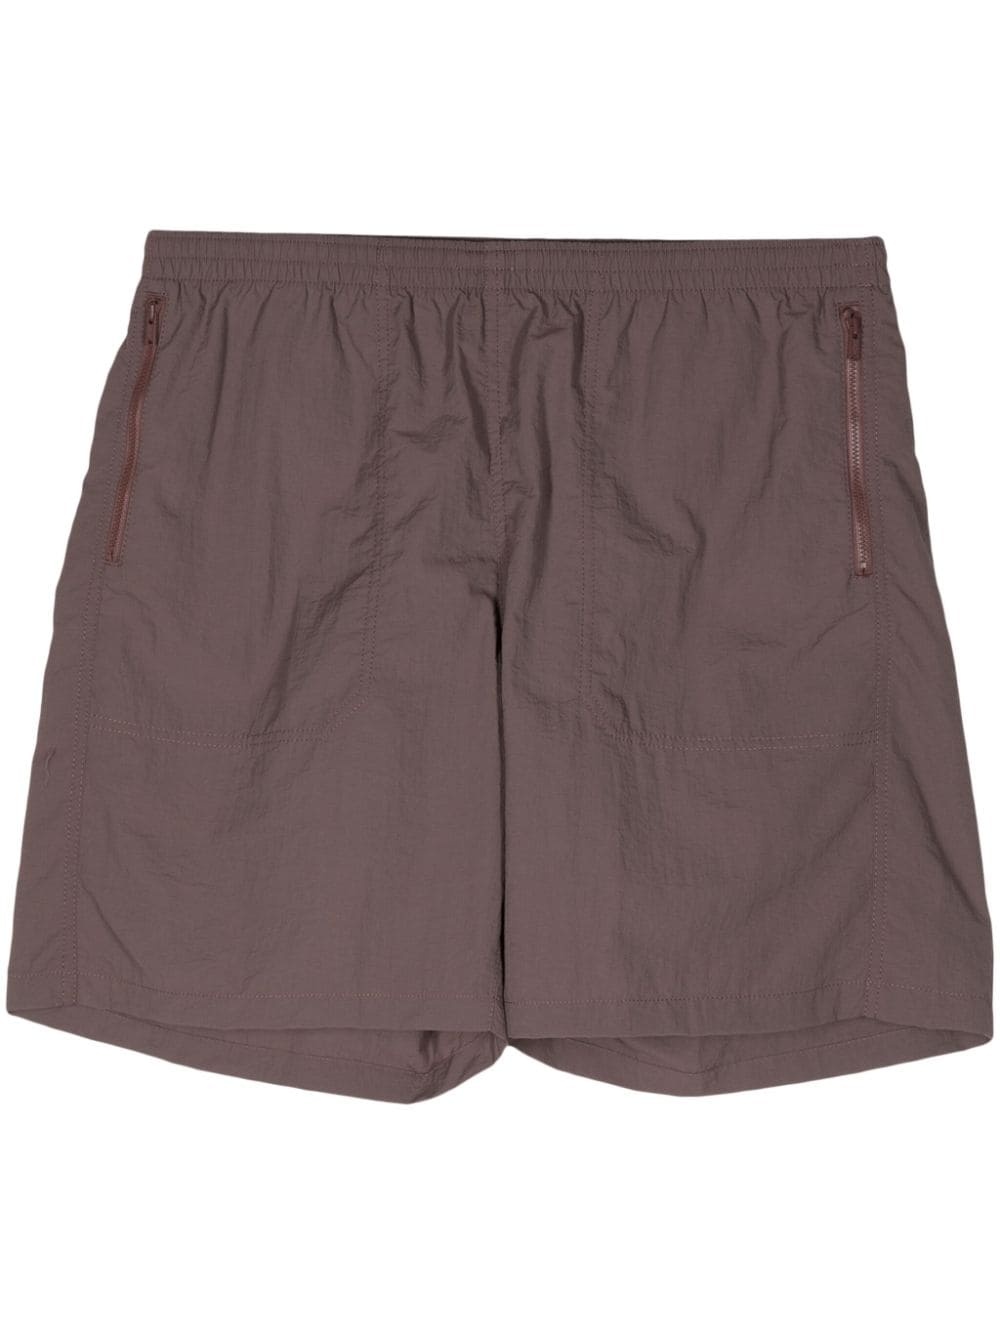 Brown Shorts - 1